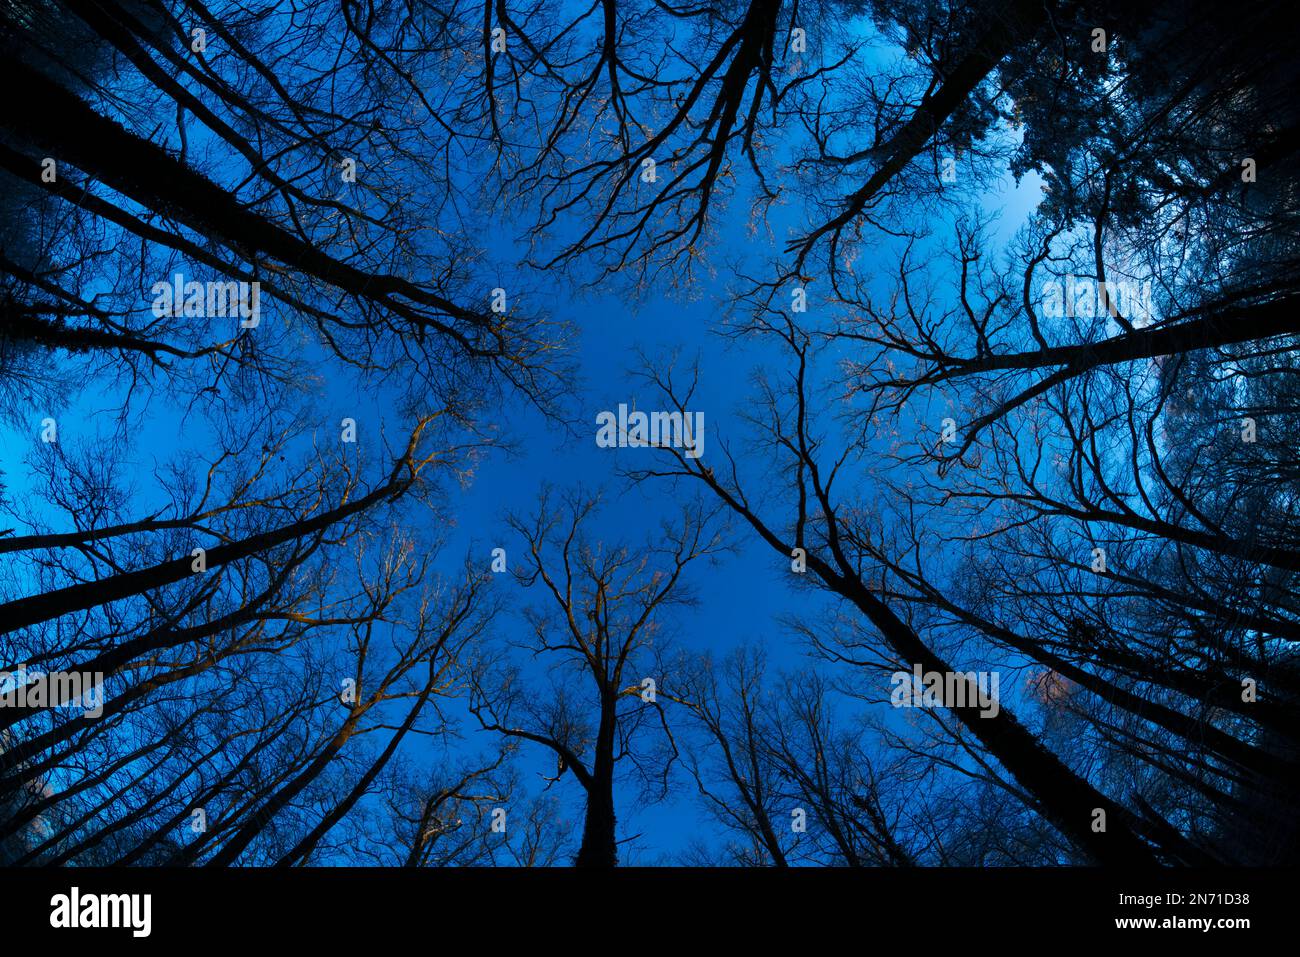 Arbres dans une forêt à feuilles caduques en hiver, ciel bleu vif, photographié avec une lentille fisheye Banque D'Images